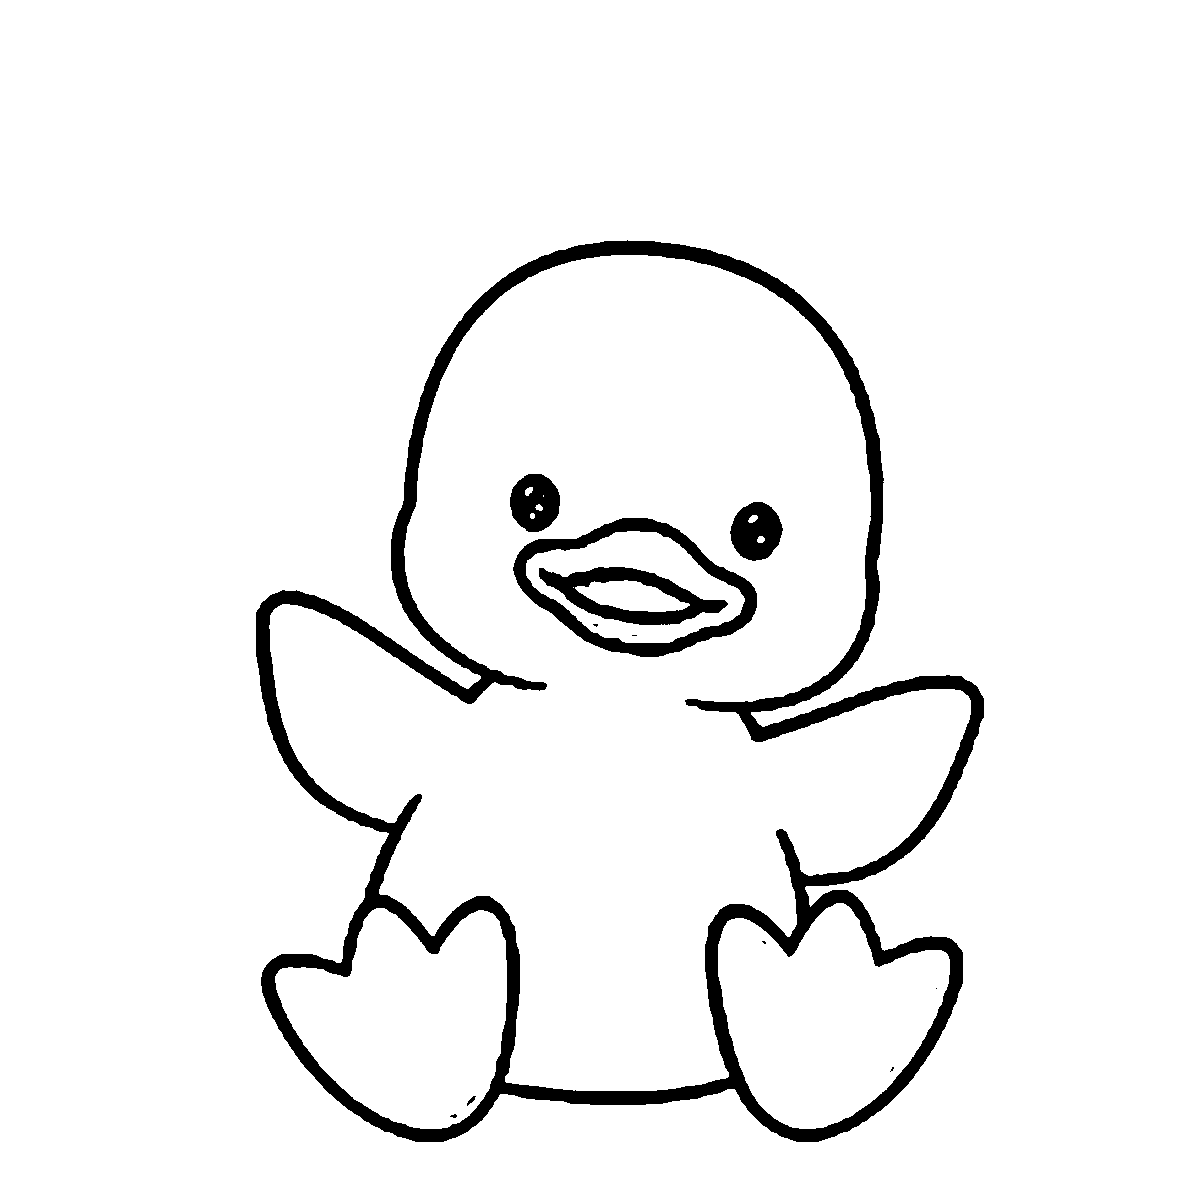 imagem de pato para desenhar